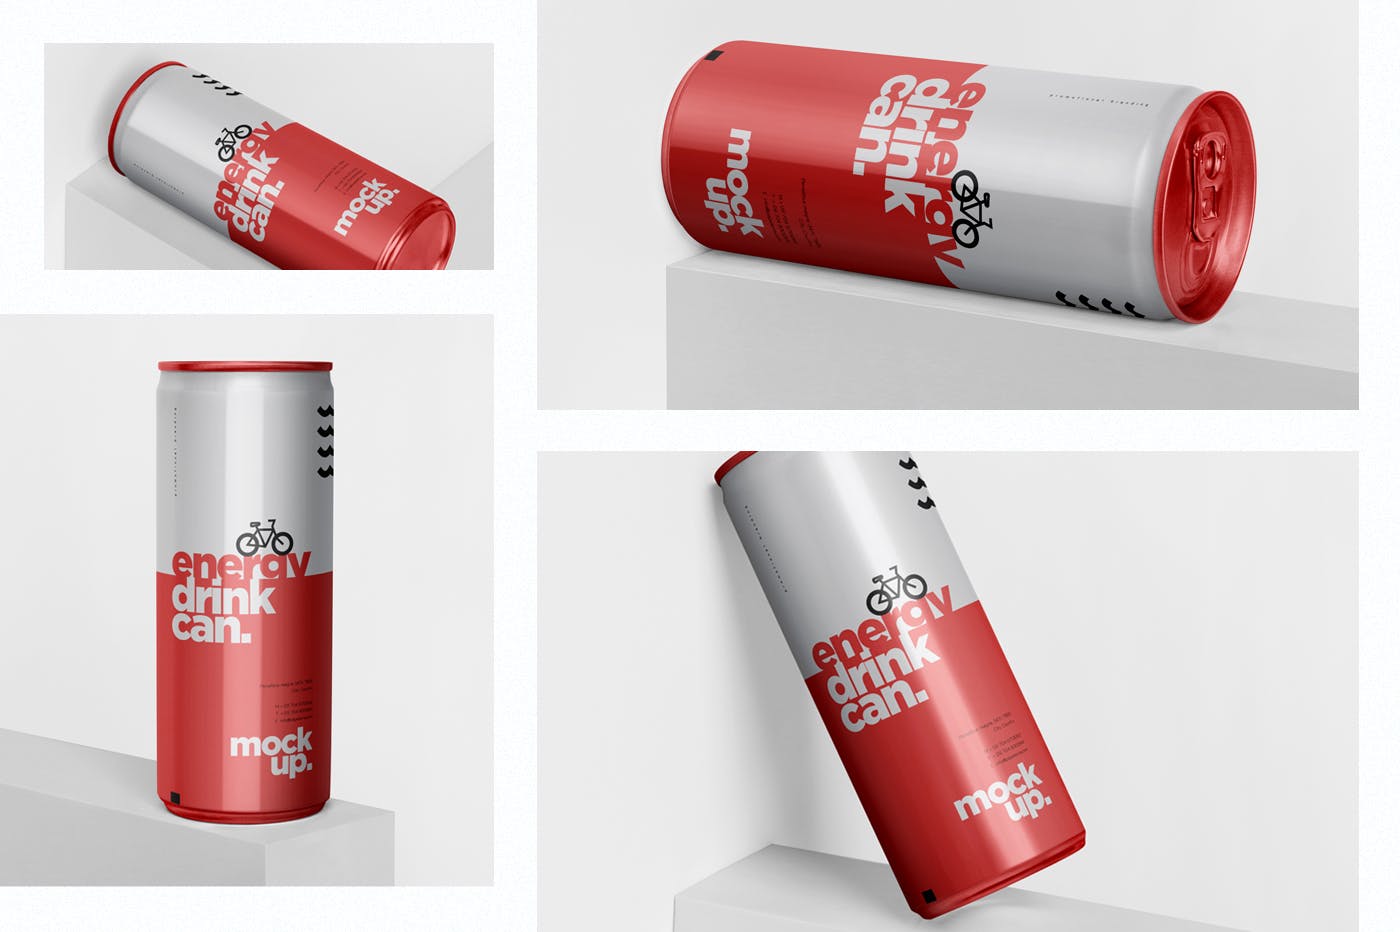 能量饮料易拉罐罐头外观设计素材库精选模板 Energy Drink Can Mock-Up – 250 ml插图(1)